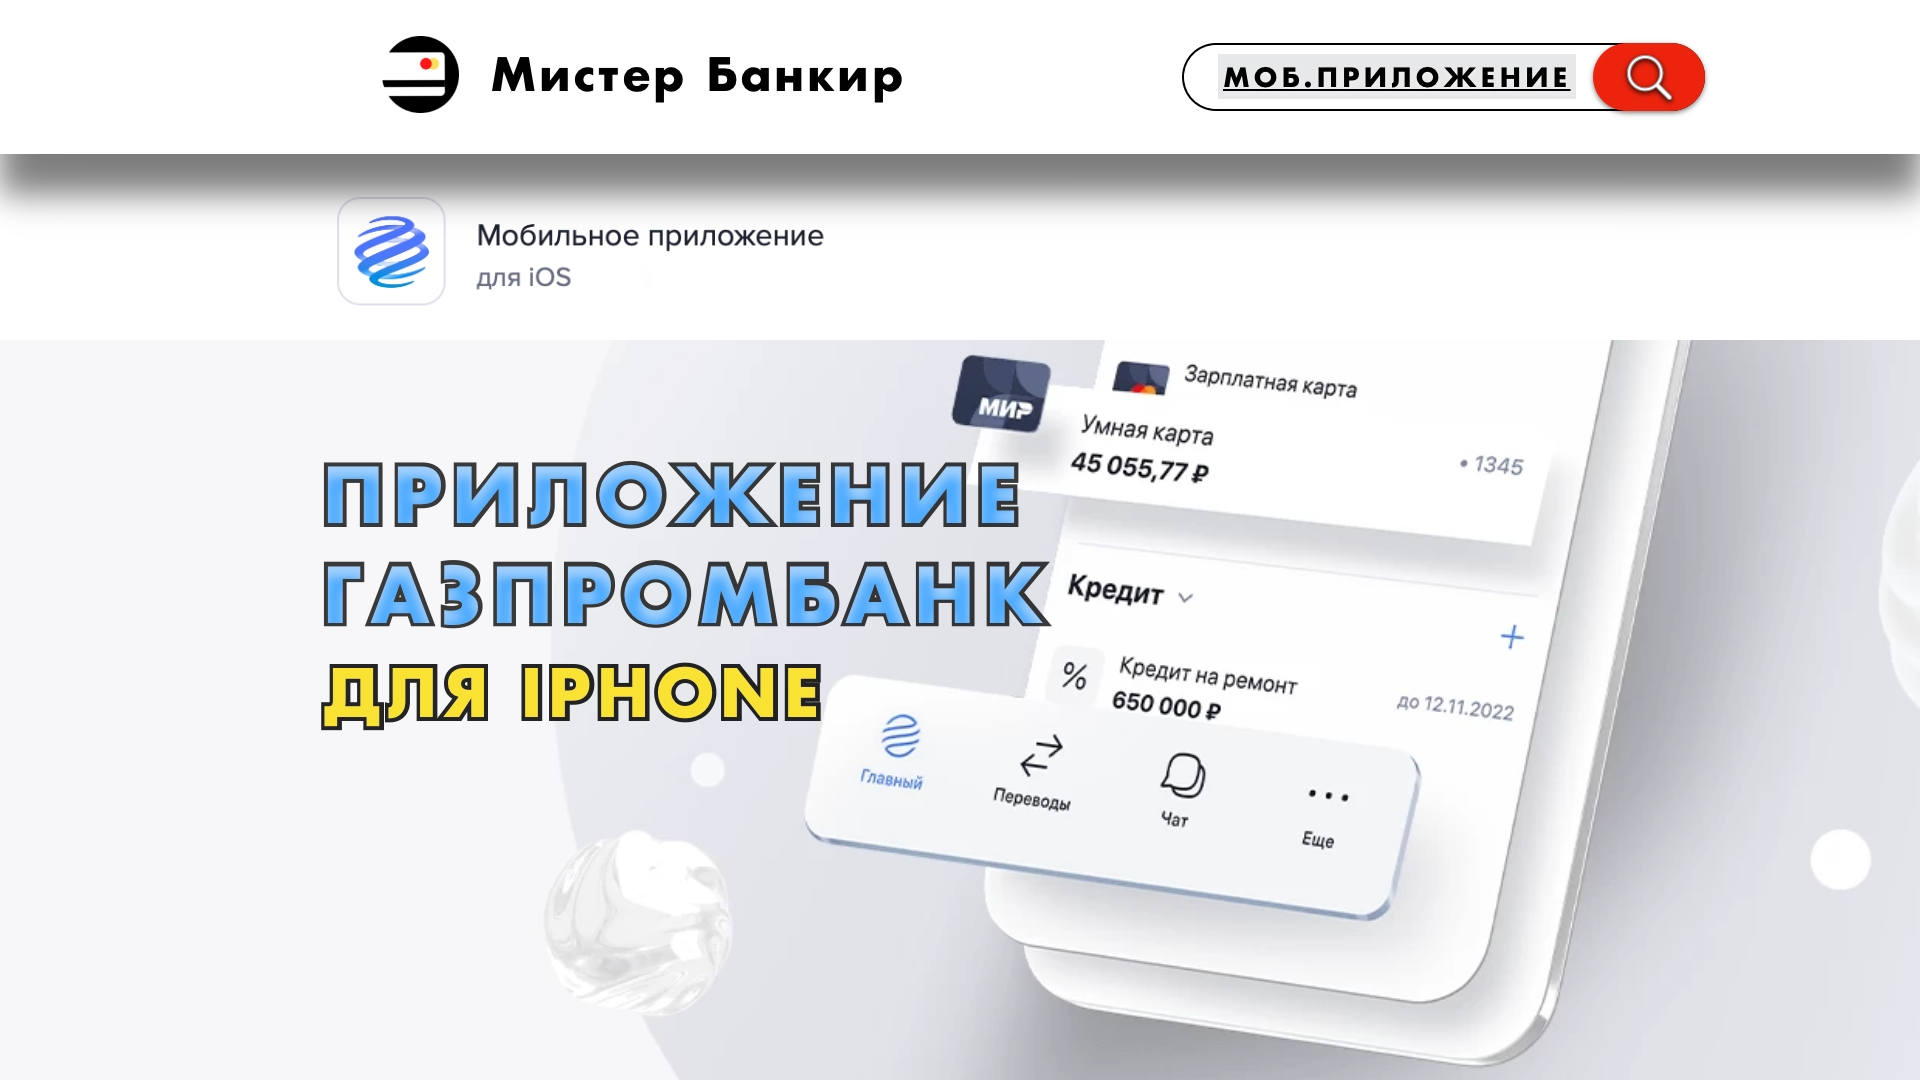 Газпромбанк скачать и установить приложение которое работает на iPhone Айфоне